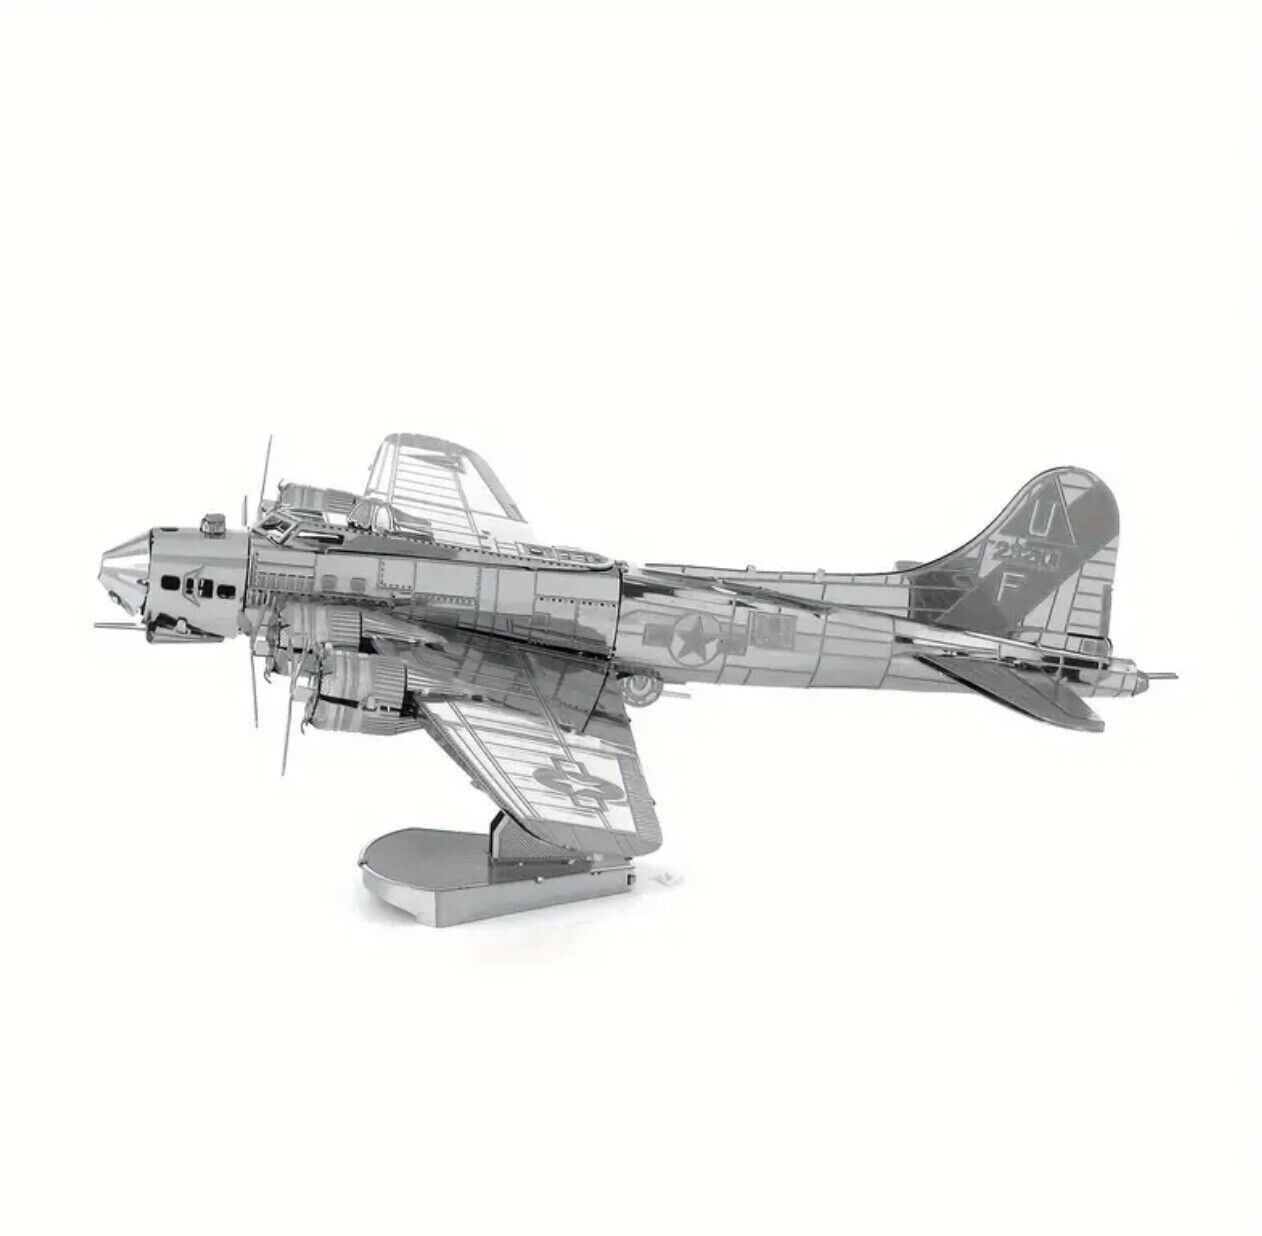 3D DIY Metal Puzzle, B17 Bomber Airplane Model